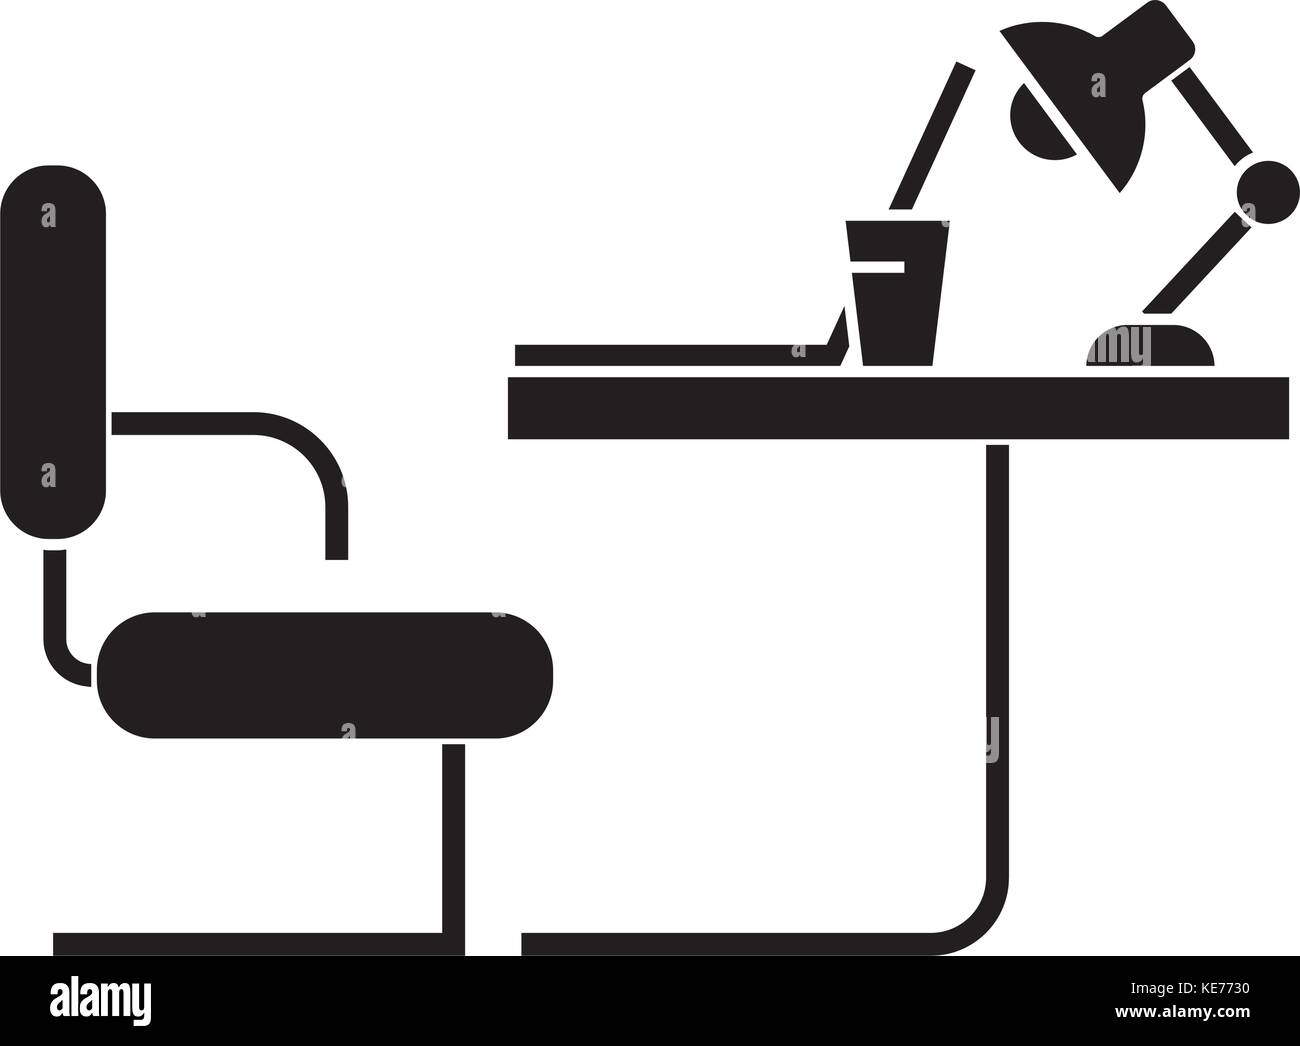 Bureau table icône weda, vector illustration, panneau noir sur fond isolé  Image Vectorielle Stock - Alamy